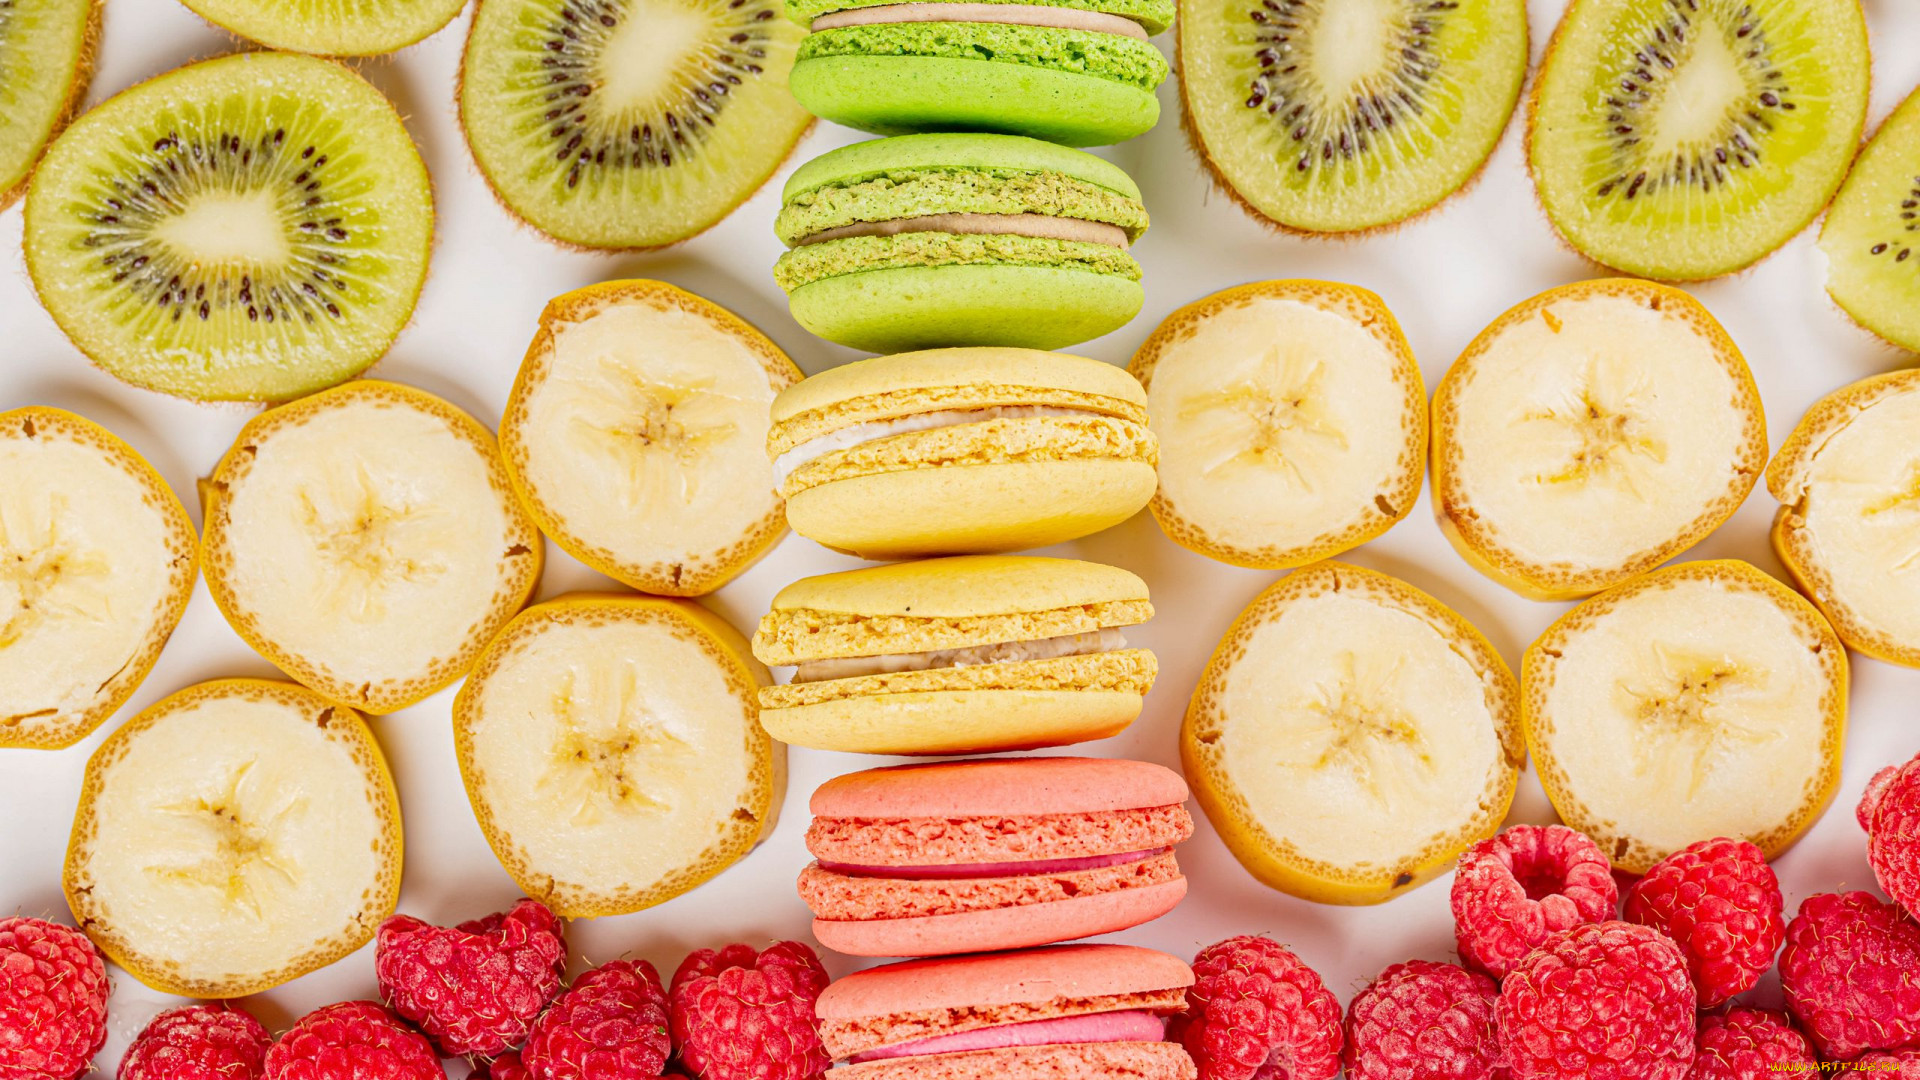 General 1920x1080 food fruit berries kiwi (fruit) sweets macarons raspberries bananas